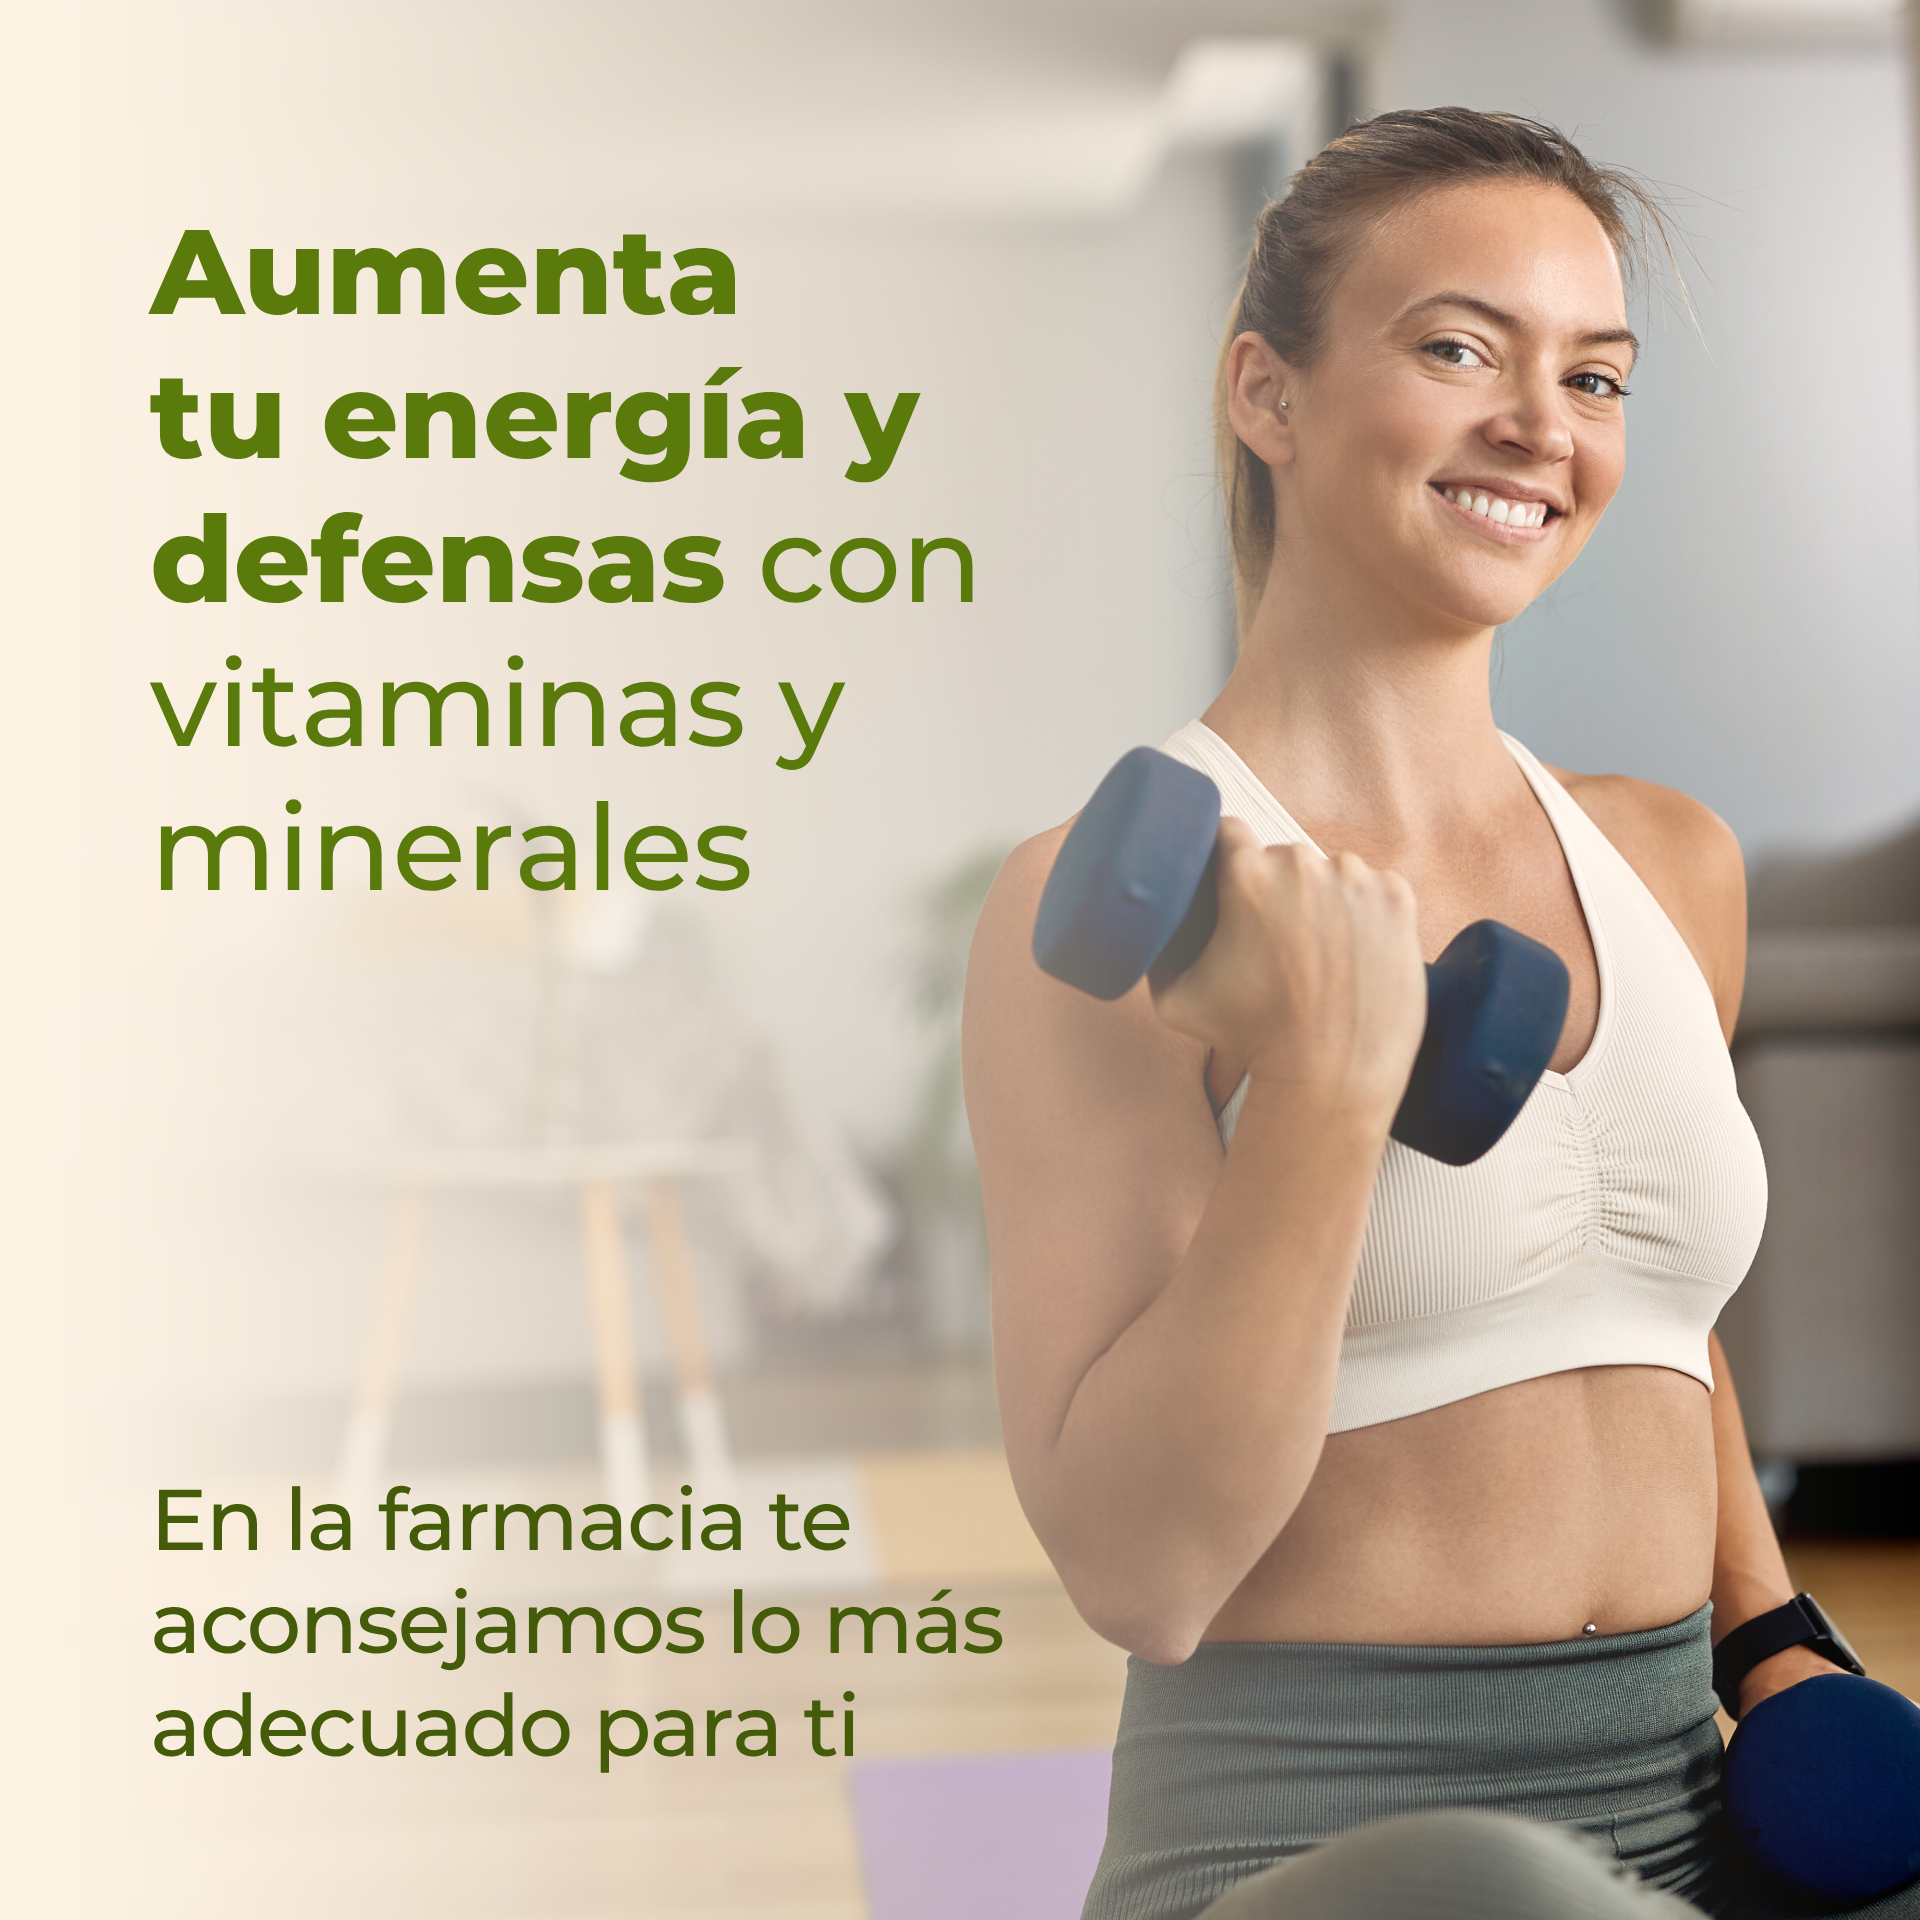 Aumenta tu energía y defensas con vitaminas y minerales. En la farmacia te aconsejamos el más adecuado para ti.